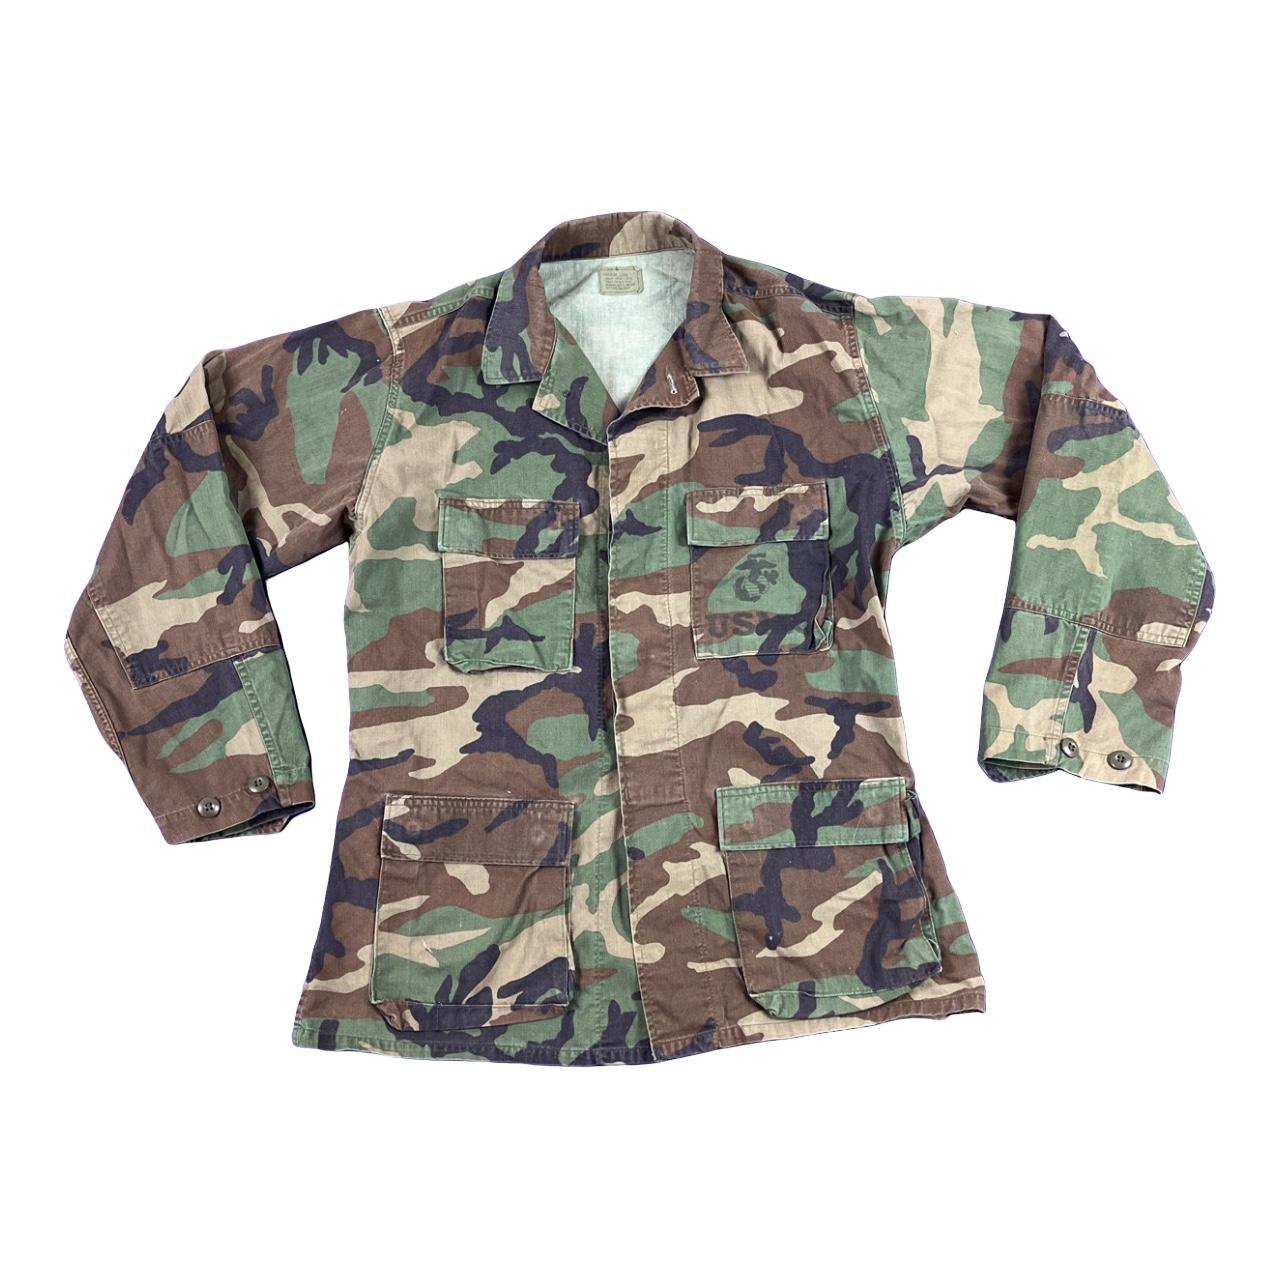 Vintage 90s Military USM Camo denim Jacket Fits a... - Depop